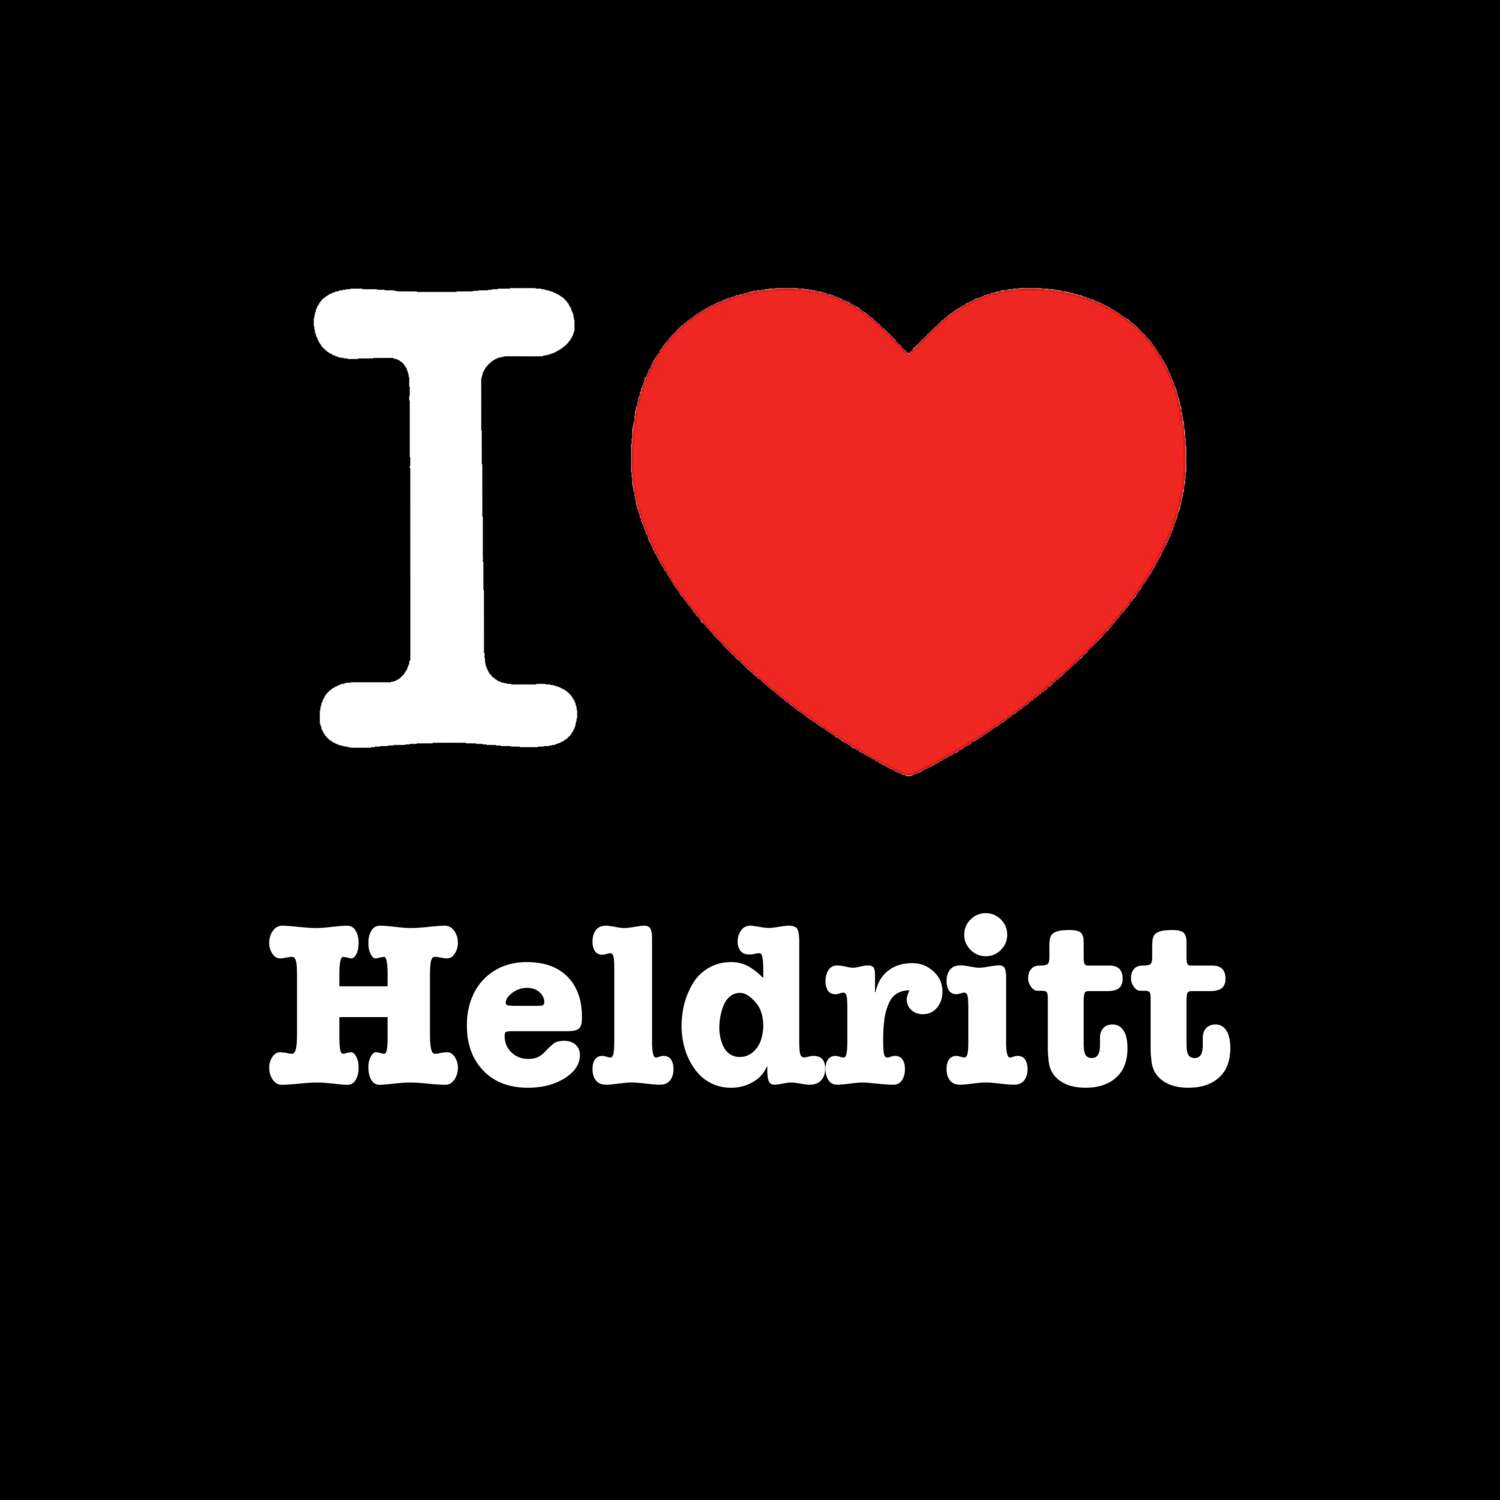 Heldritt T-Shirt »I love«